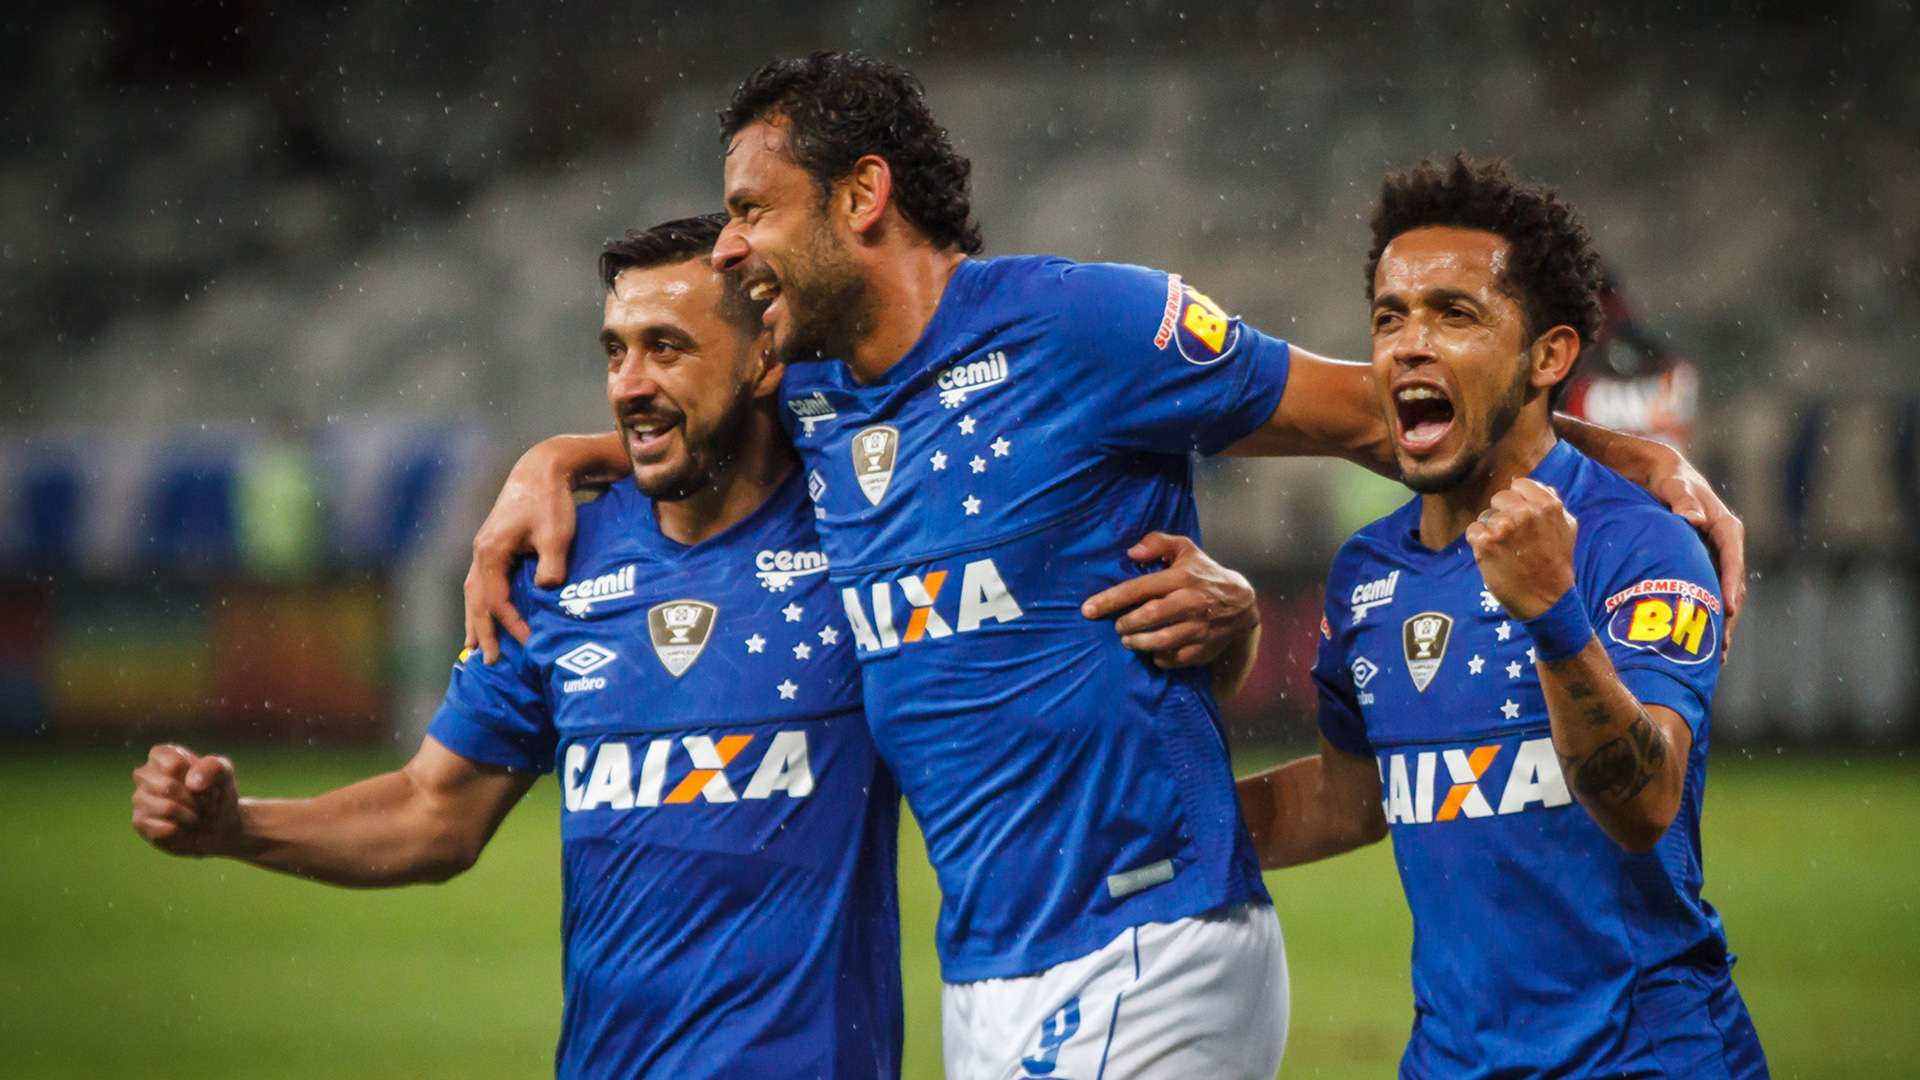 Fred Robinho Rafinha Cruzeiro Vitória Brasileirão Serie A 21112018